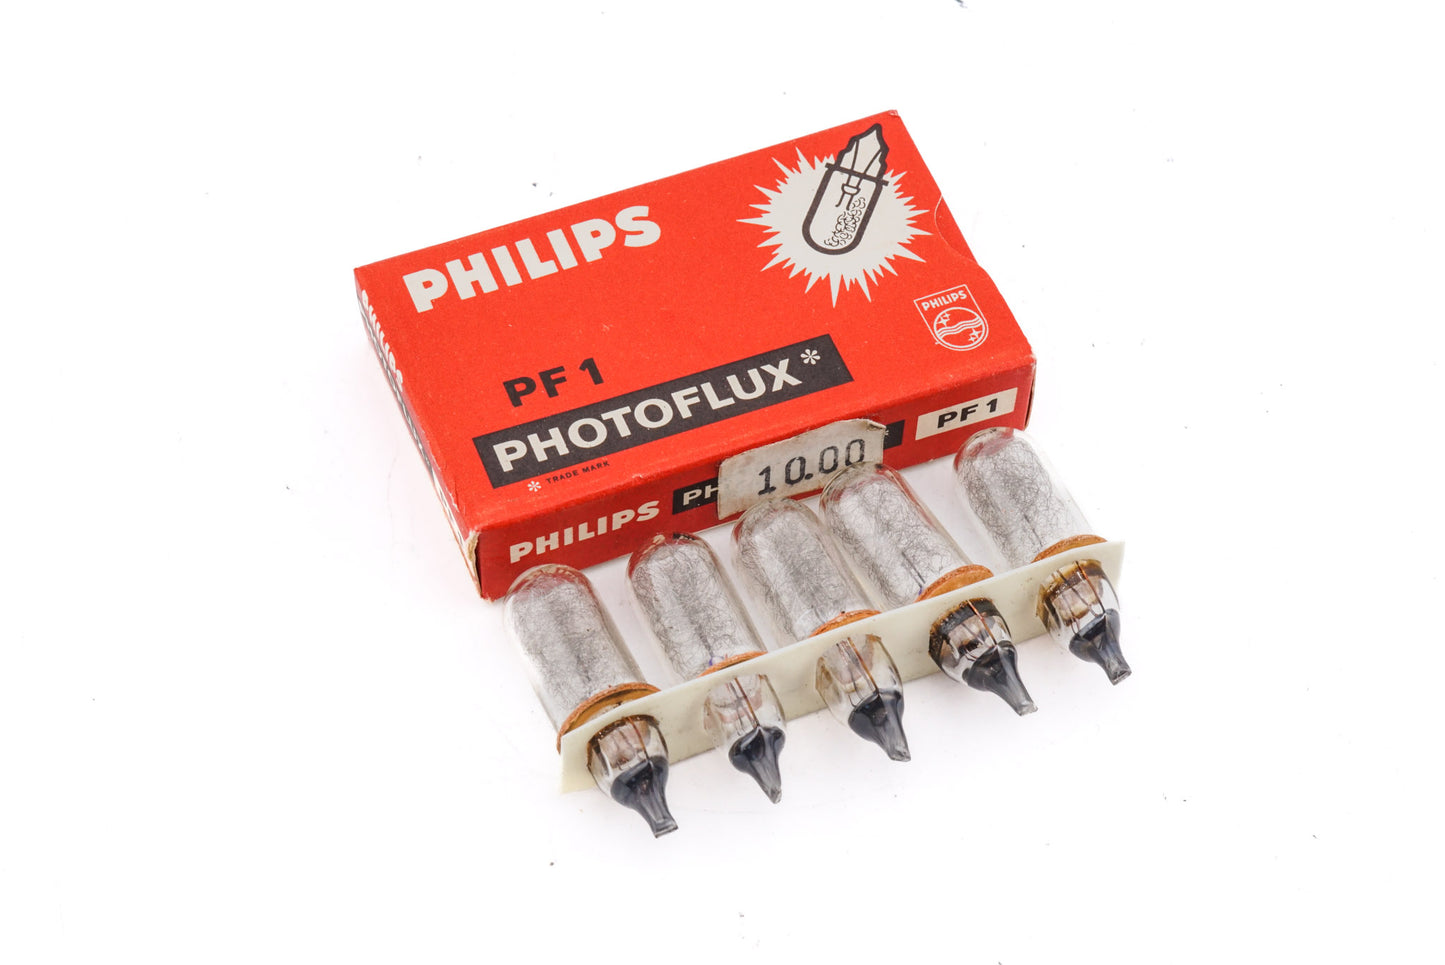 Philips PF1 Flashbulbs